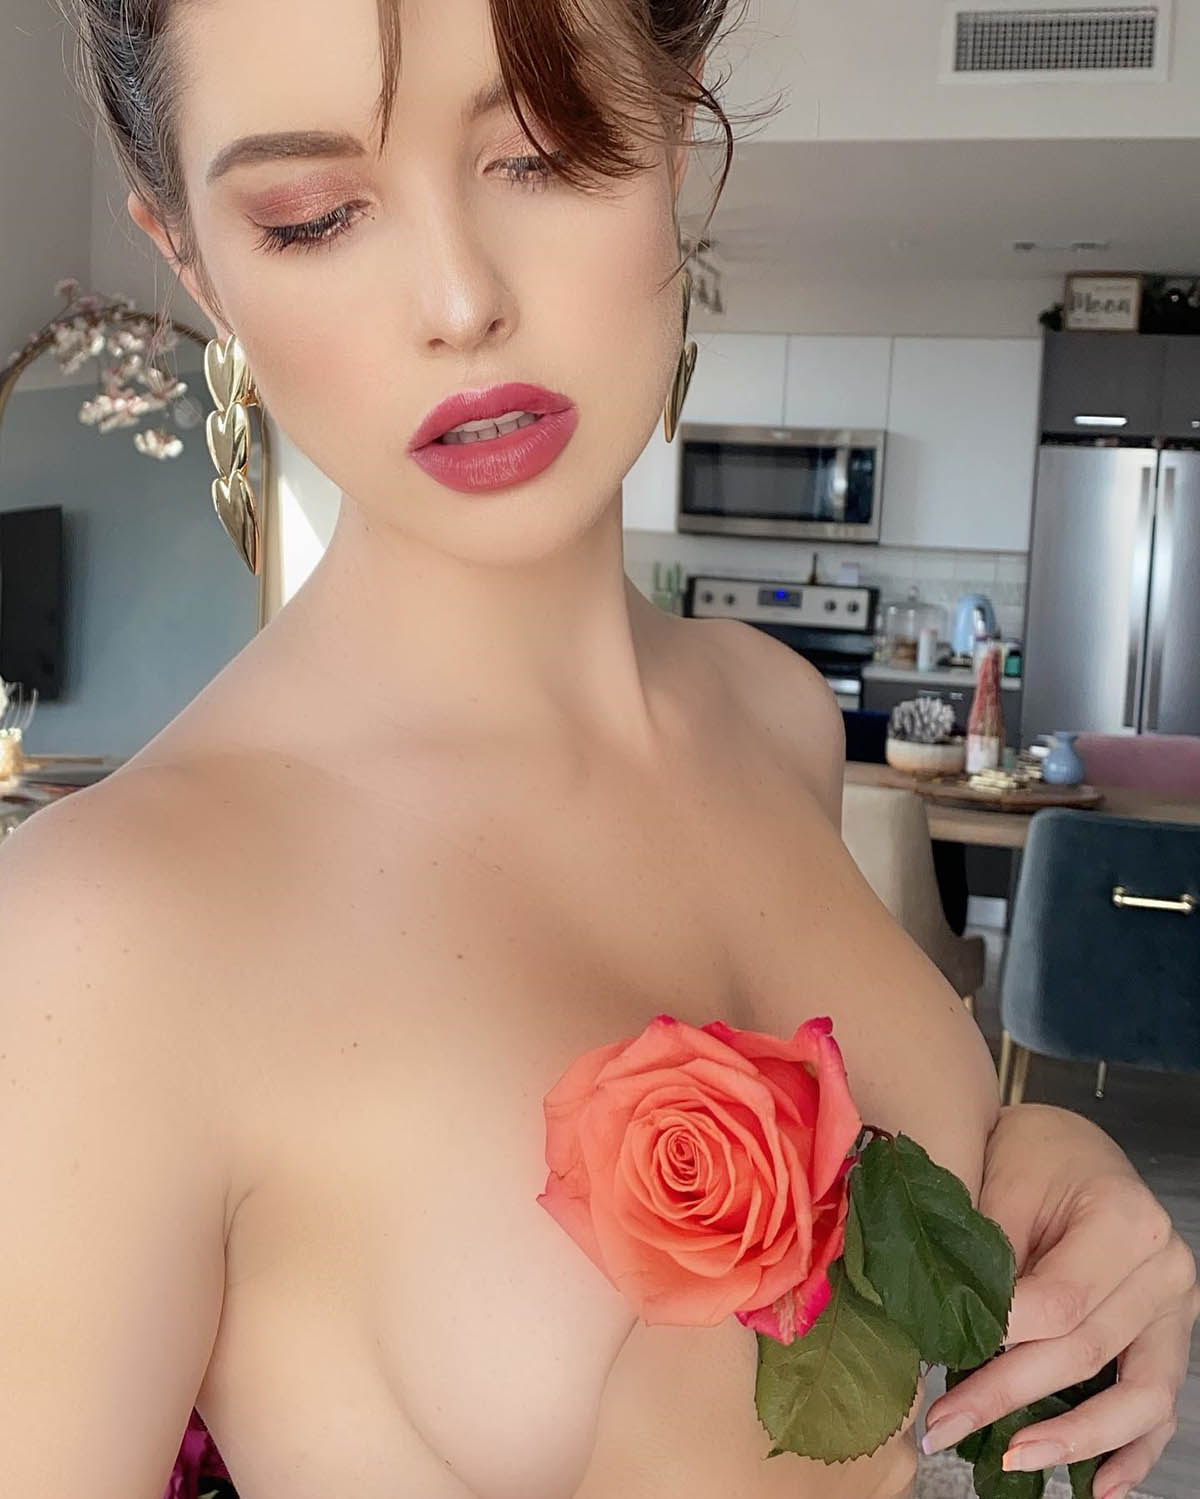 Γυμνή καλυμμένη με λουλούδια και άλλες σέξι φωτογραφίες της Amanda Cerny